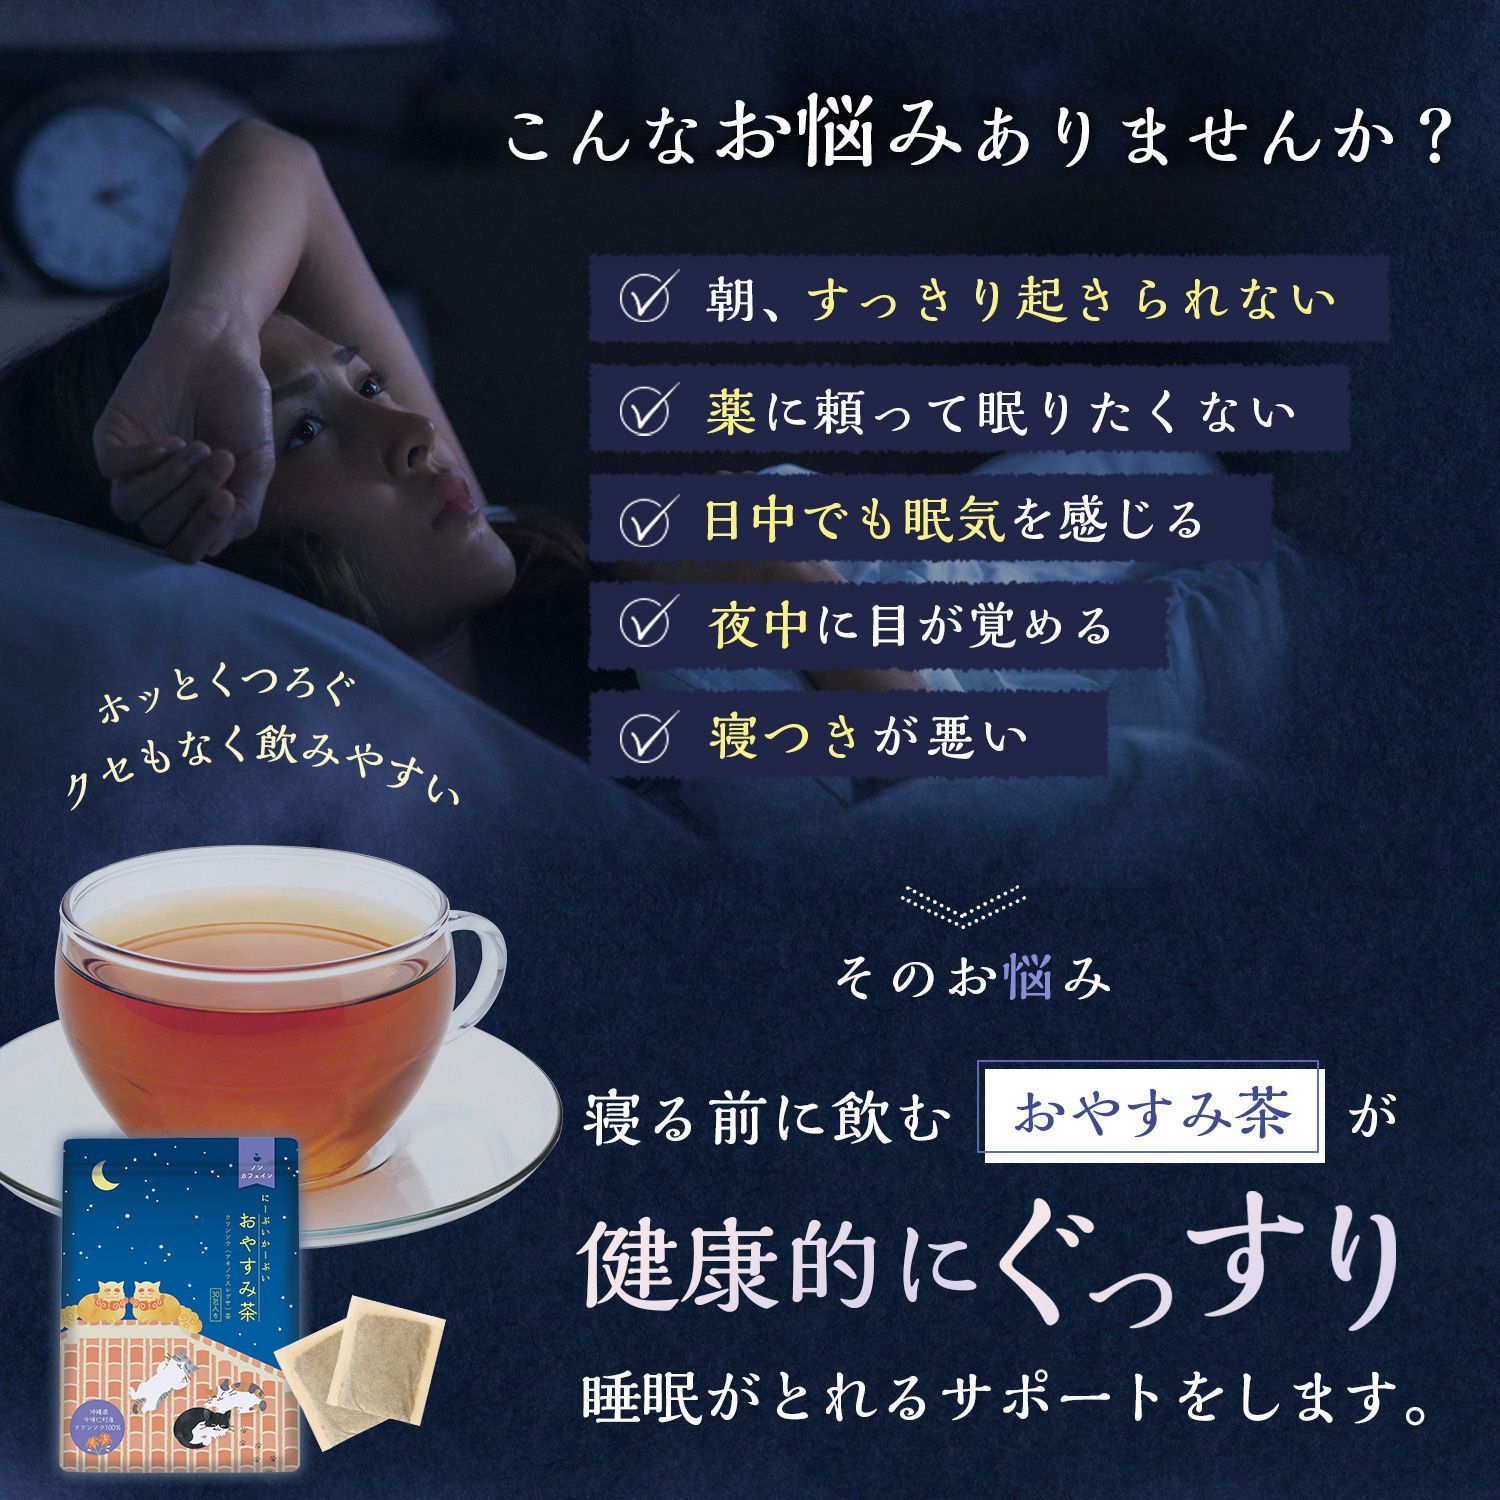 にーぶいかーぶいおやすみ茶 クワンソウ100% ノンカフェイン ハーブティー-3